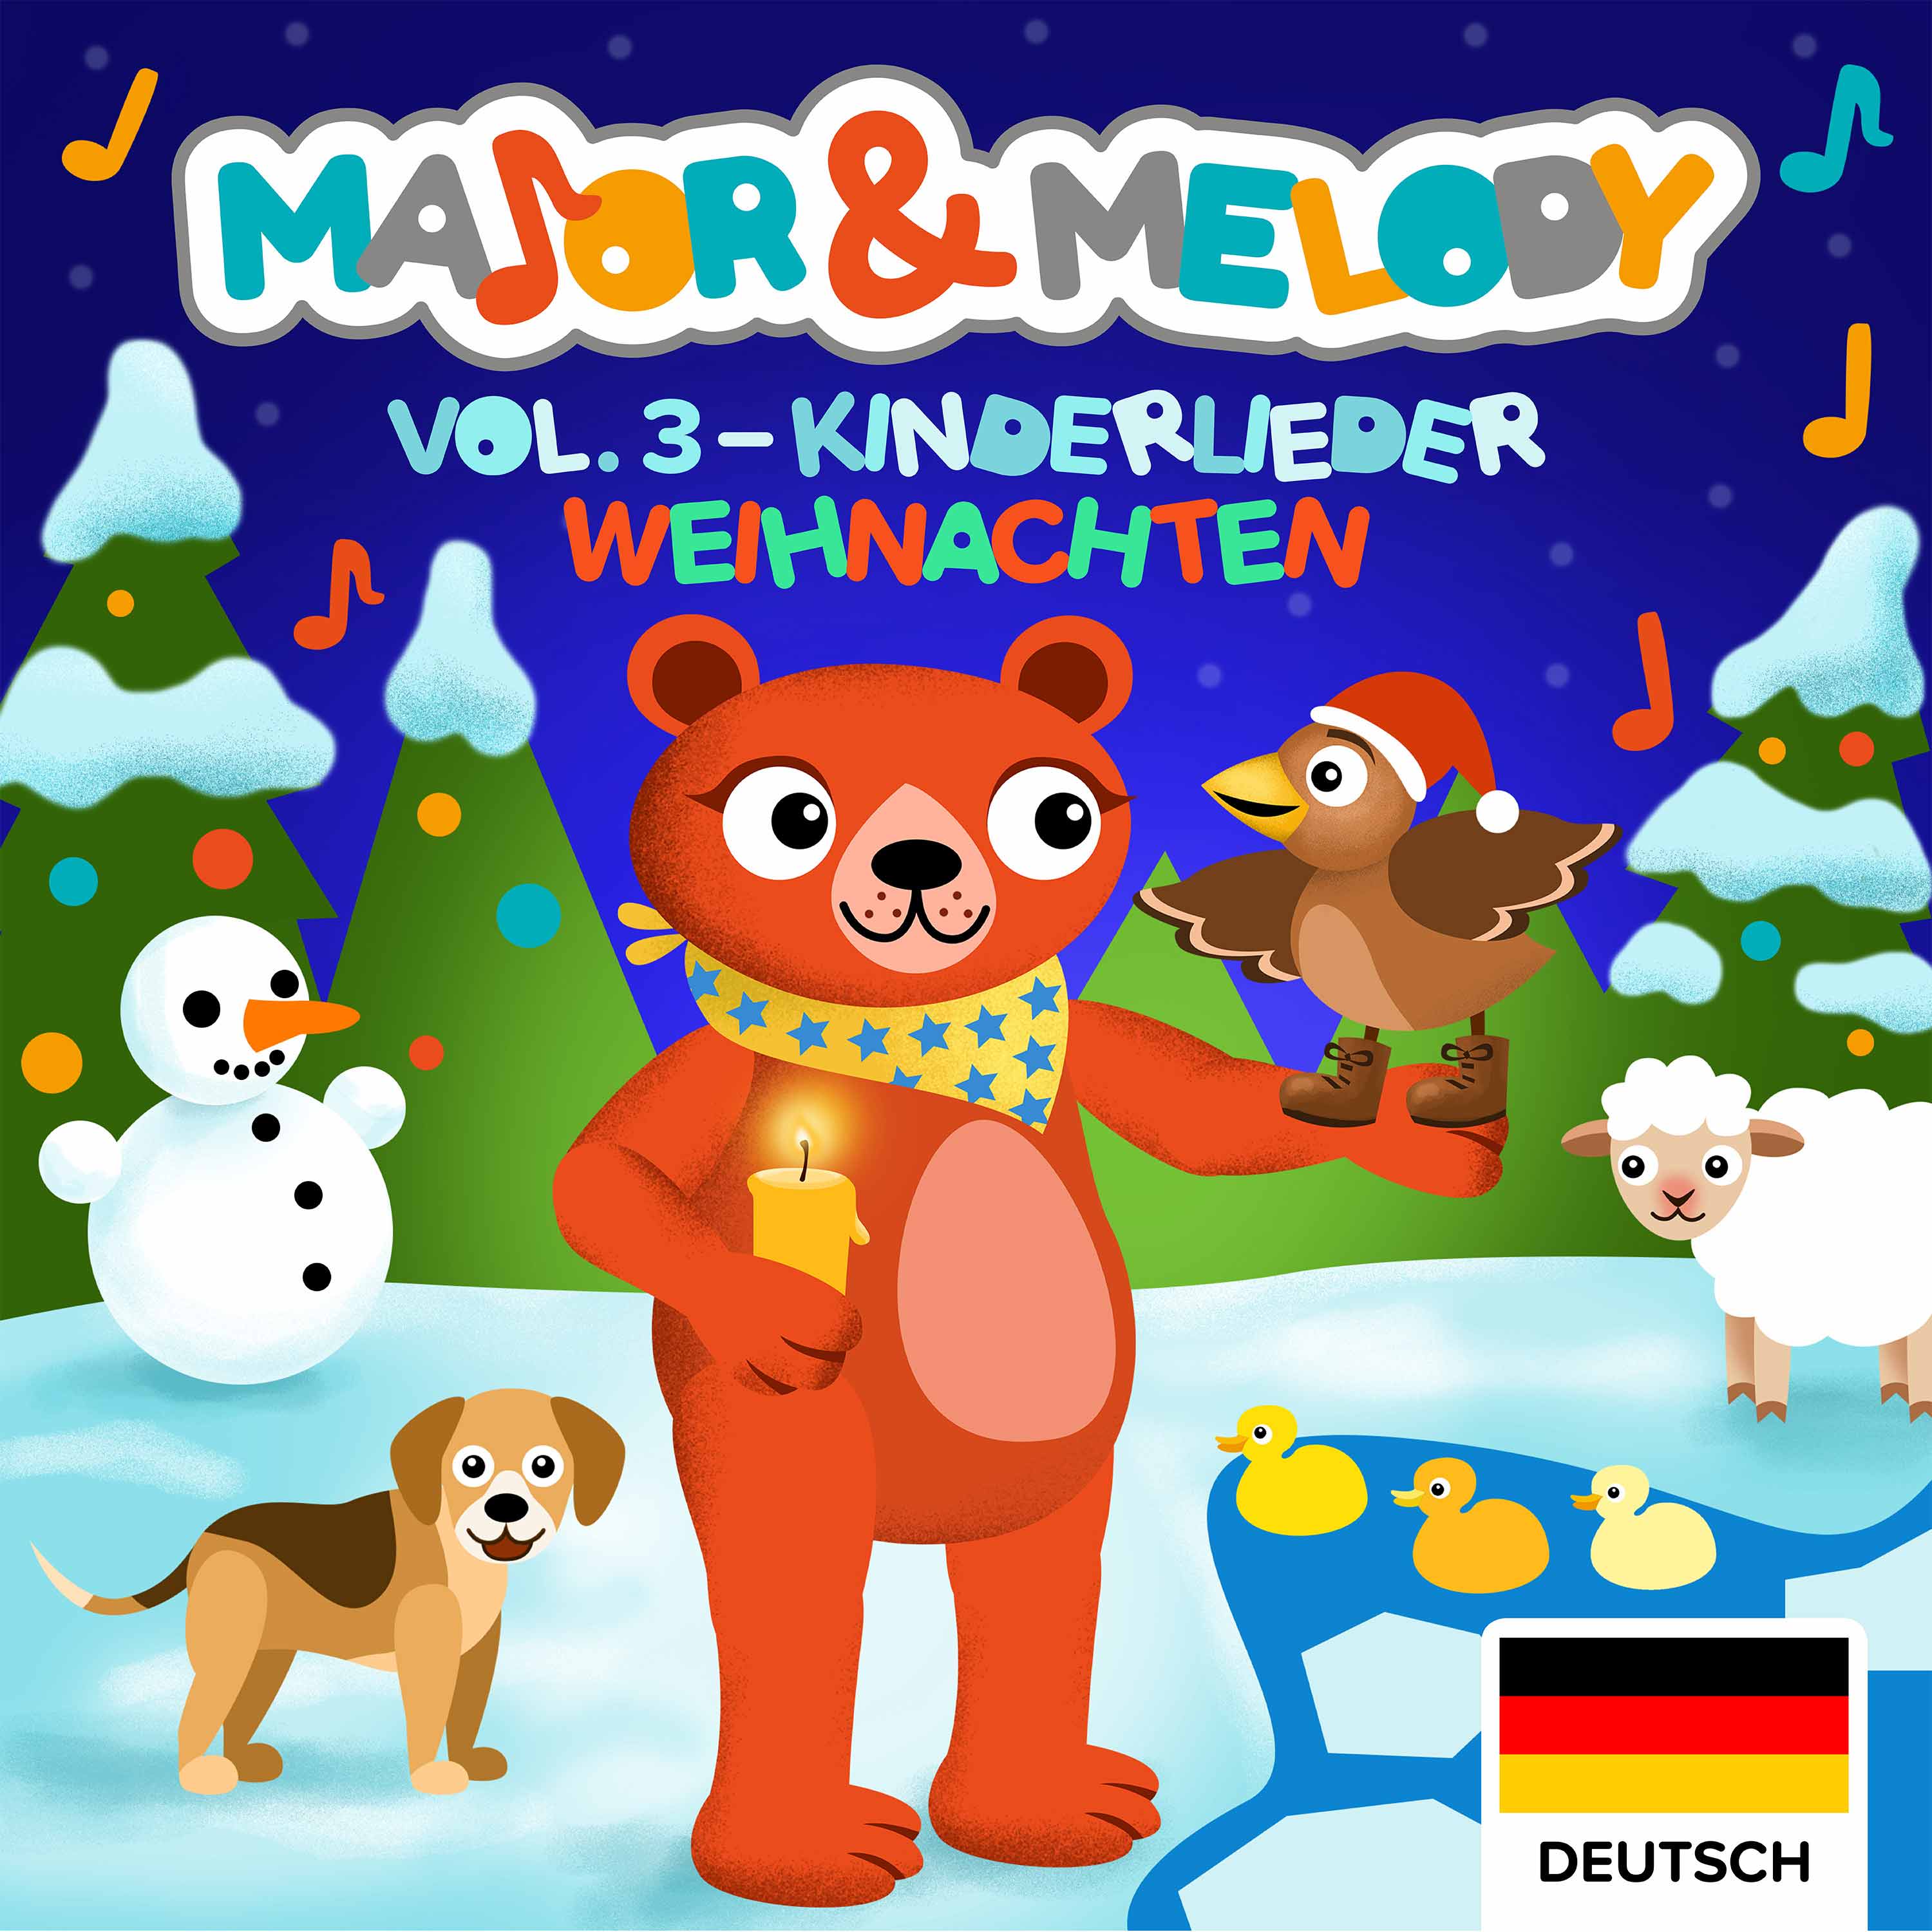 Major & Melody - Kinderlieder - Weihnachten